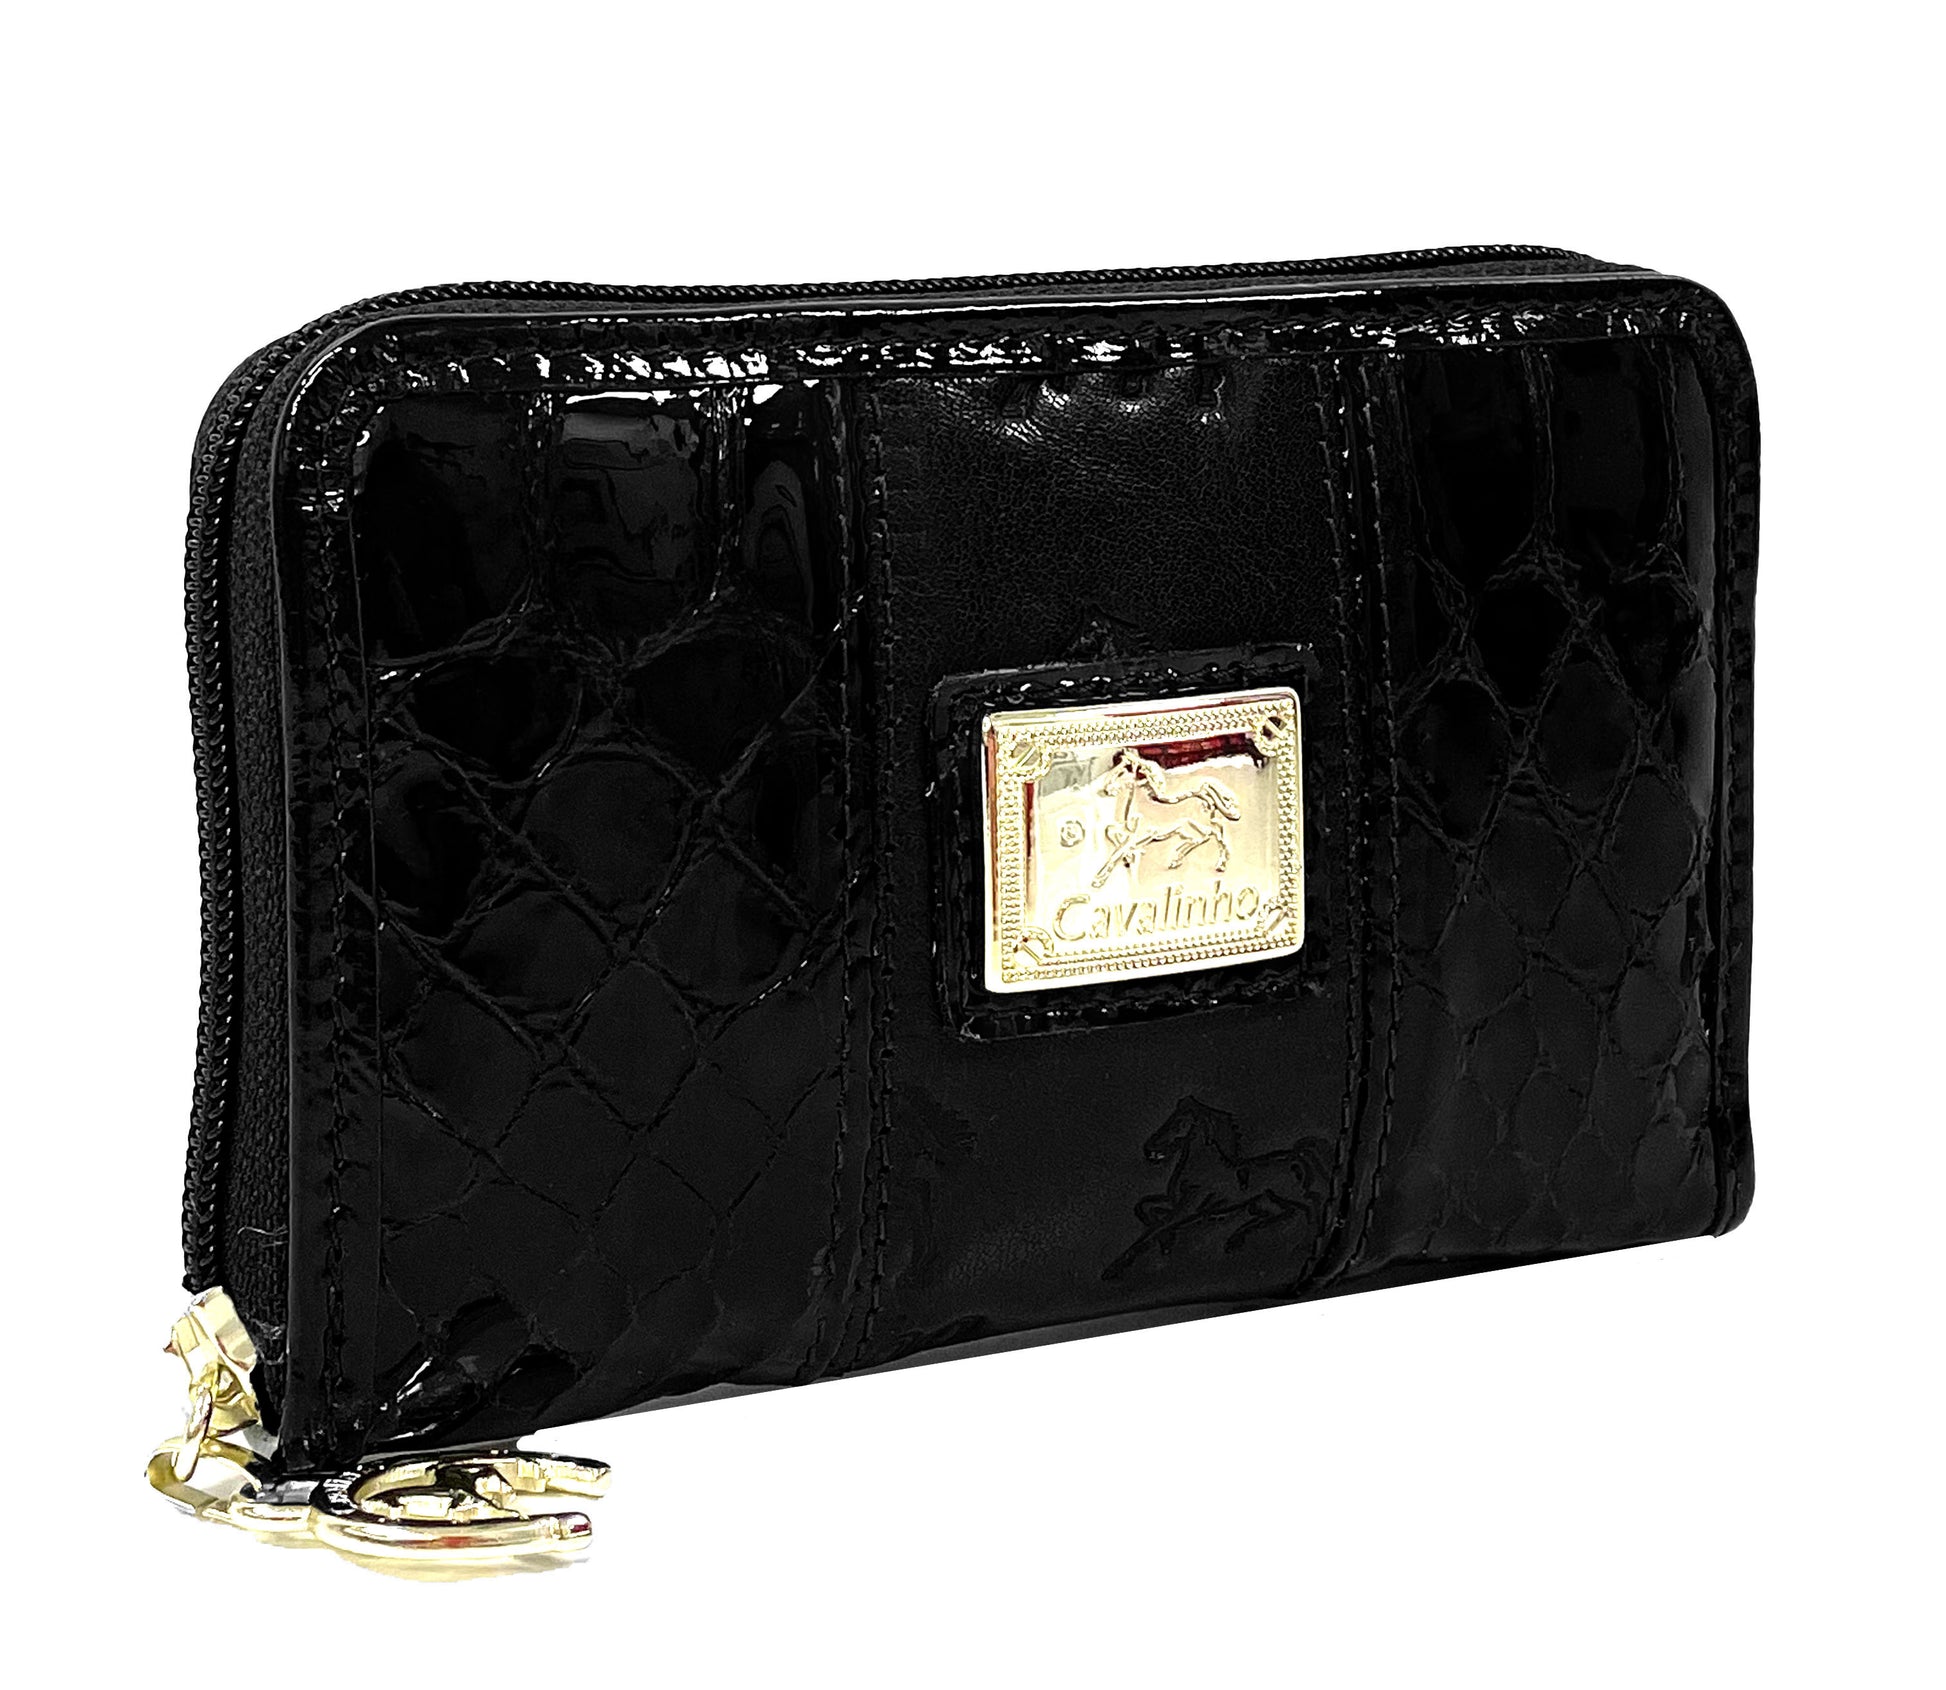 Cavalinho Honor Leather Card Holder Wallet - Black - 28190217.01.99_2